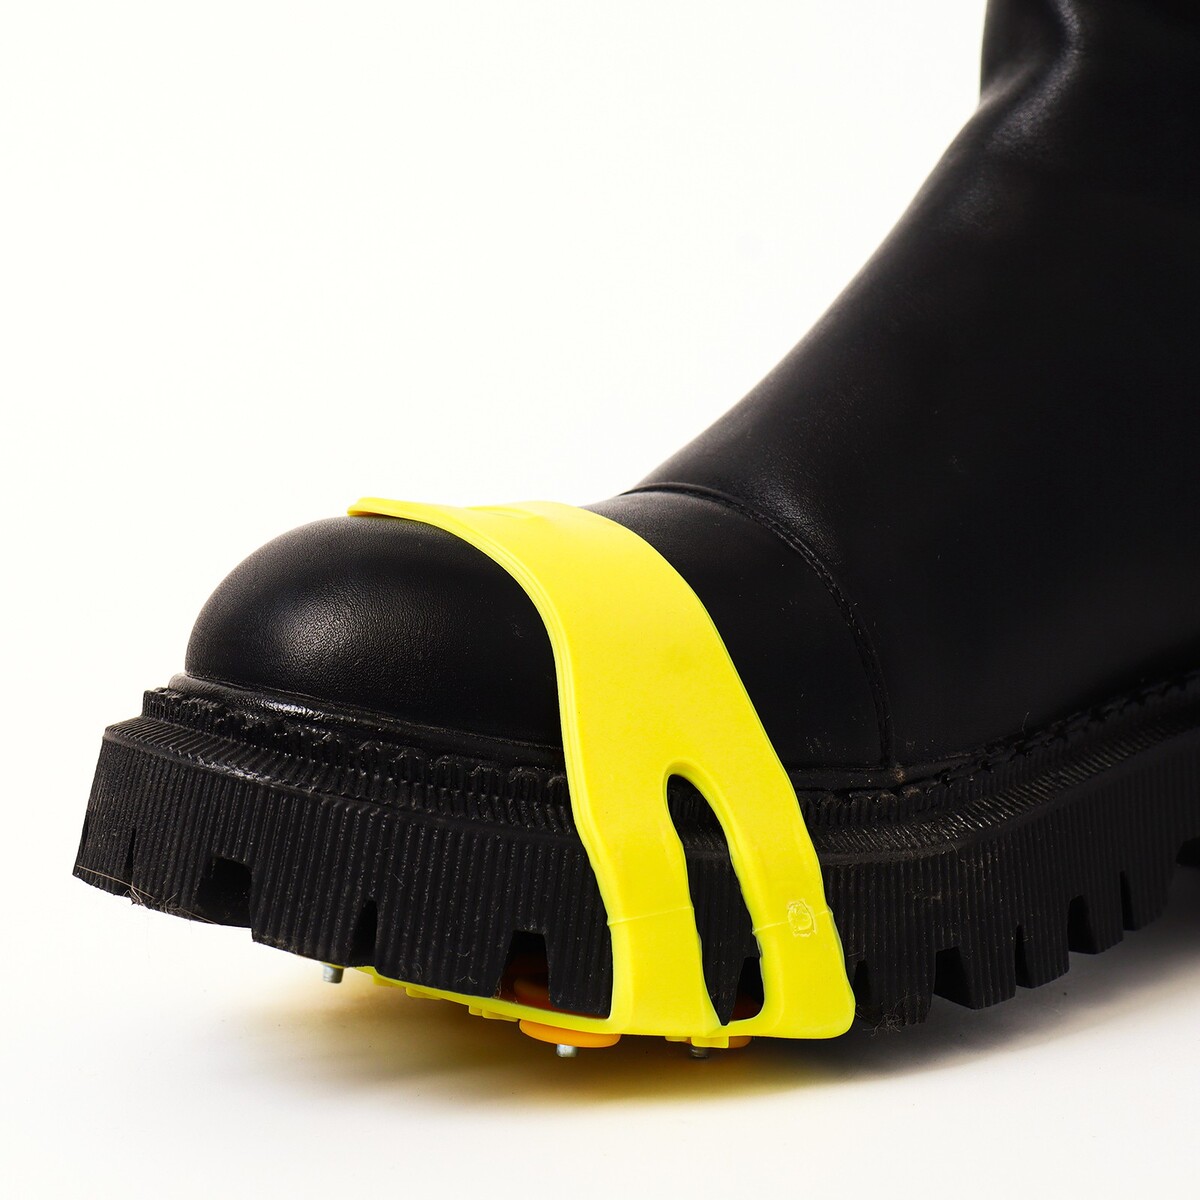 Шипы для обуви на толстой резине 5 шипов, универсальные, желтые No brand 05609999 - фото 4